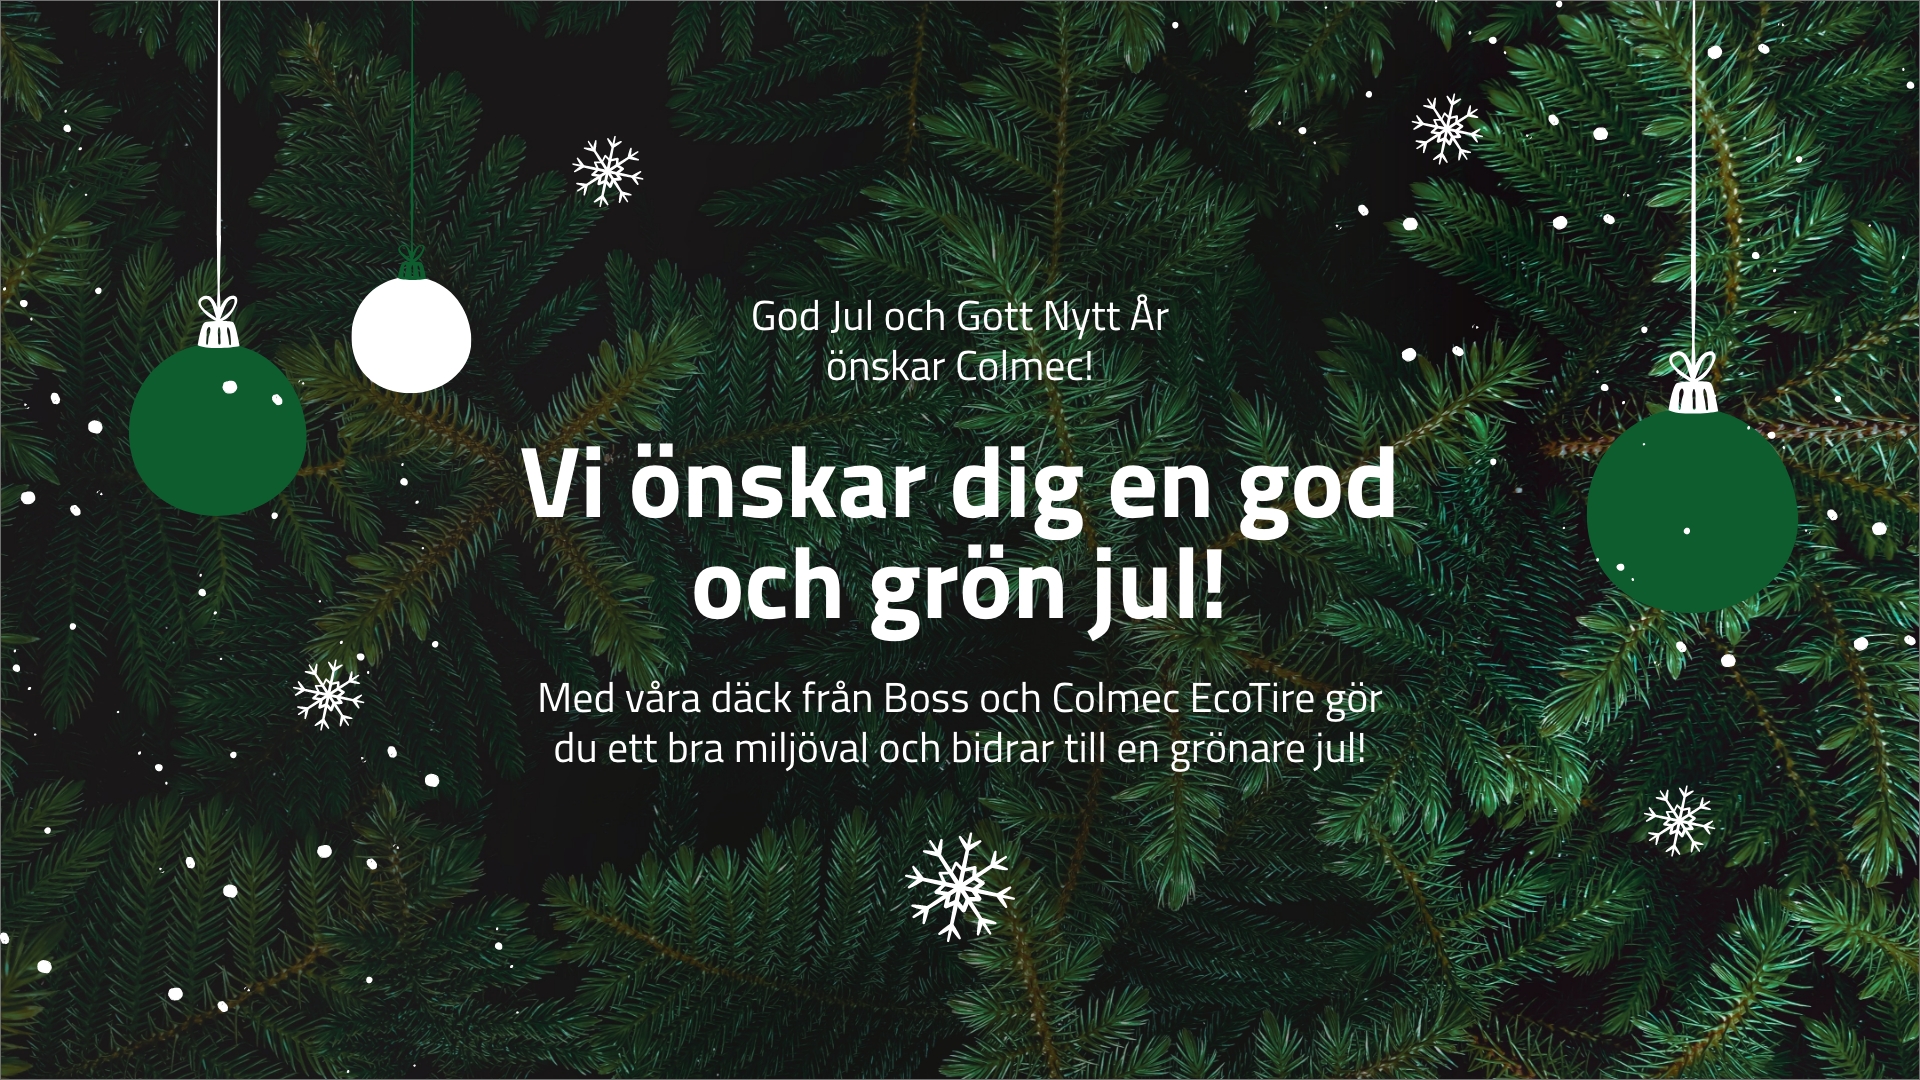 Julkort med texten "Vi önskar dig en god och grön jul!"